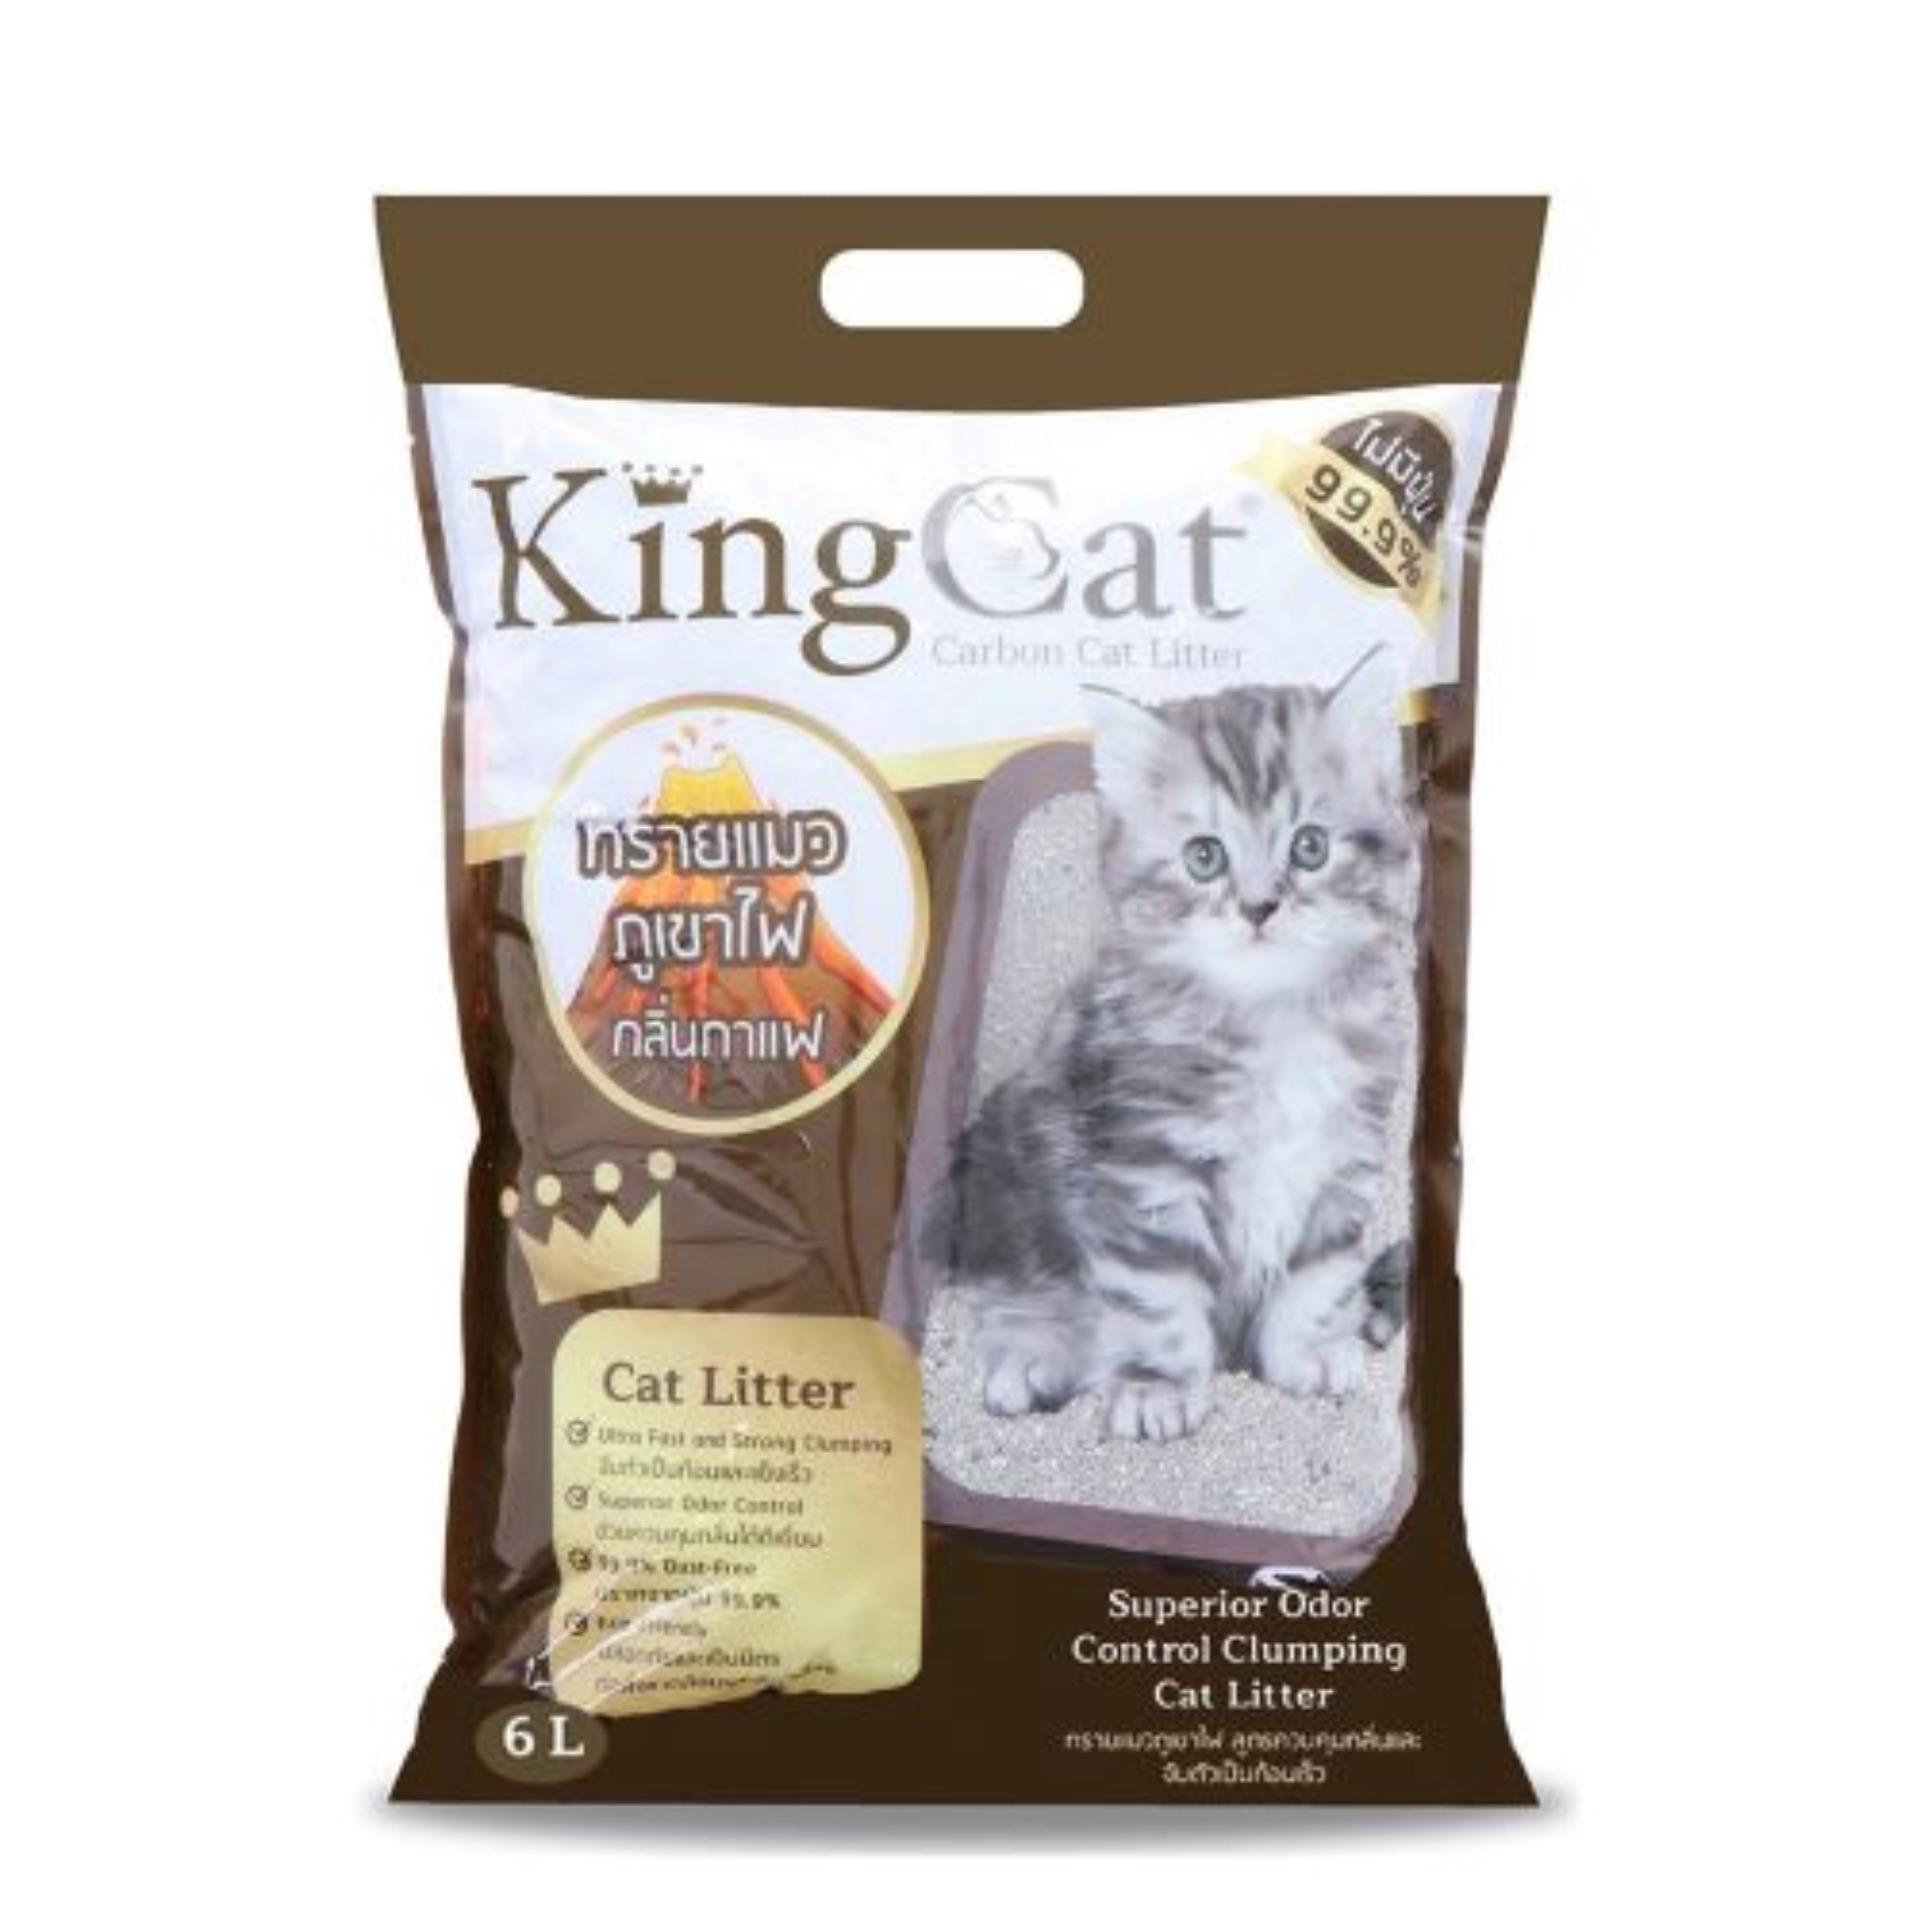 King Cat ทรายแมวภูเขาไฟ กลิ่นกาแฟ สูตรจับตัวเป็นก้อนง่าย ฝุ่นน้อย สำหรับแมวทุกวัย (6 ลิตร/ถุง)